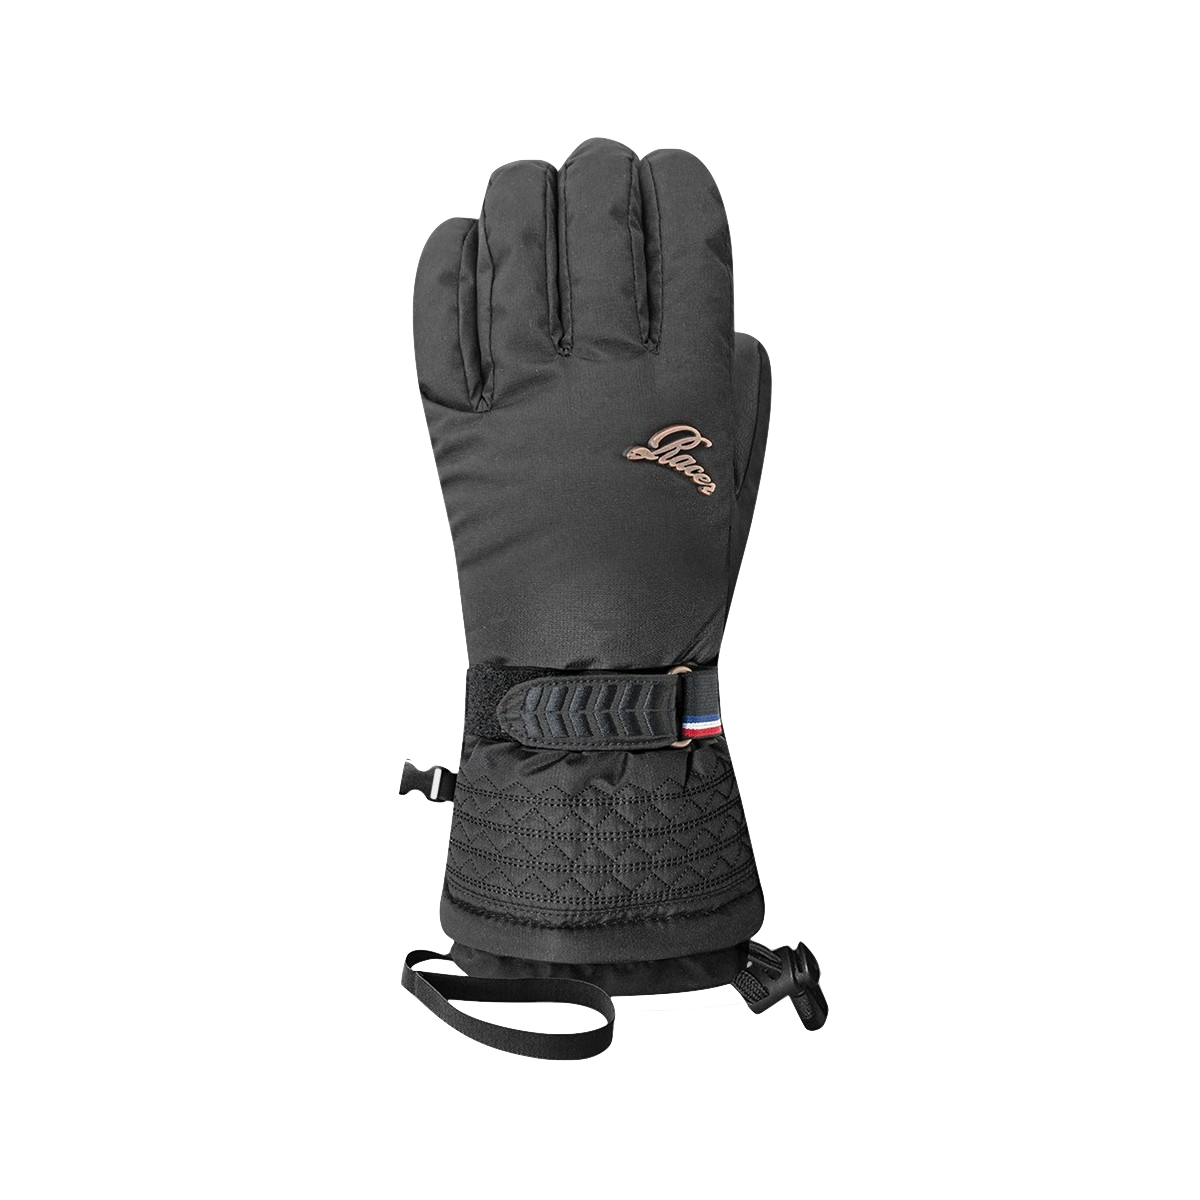 Racer Gely 3 - Gloves - Women's